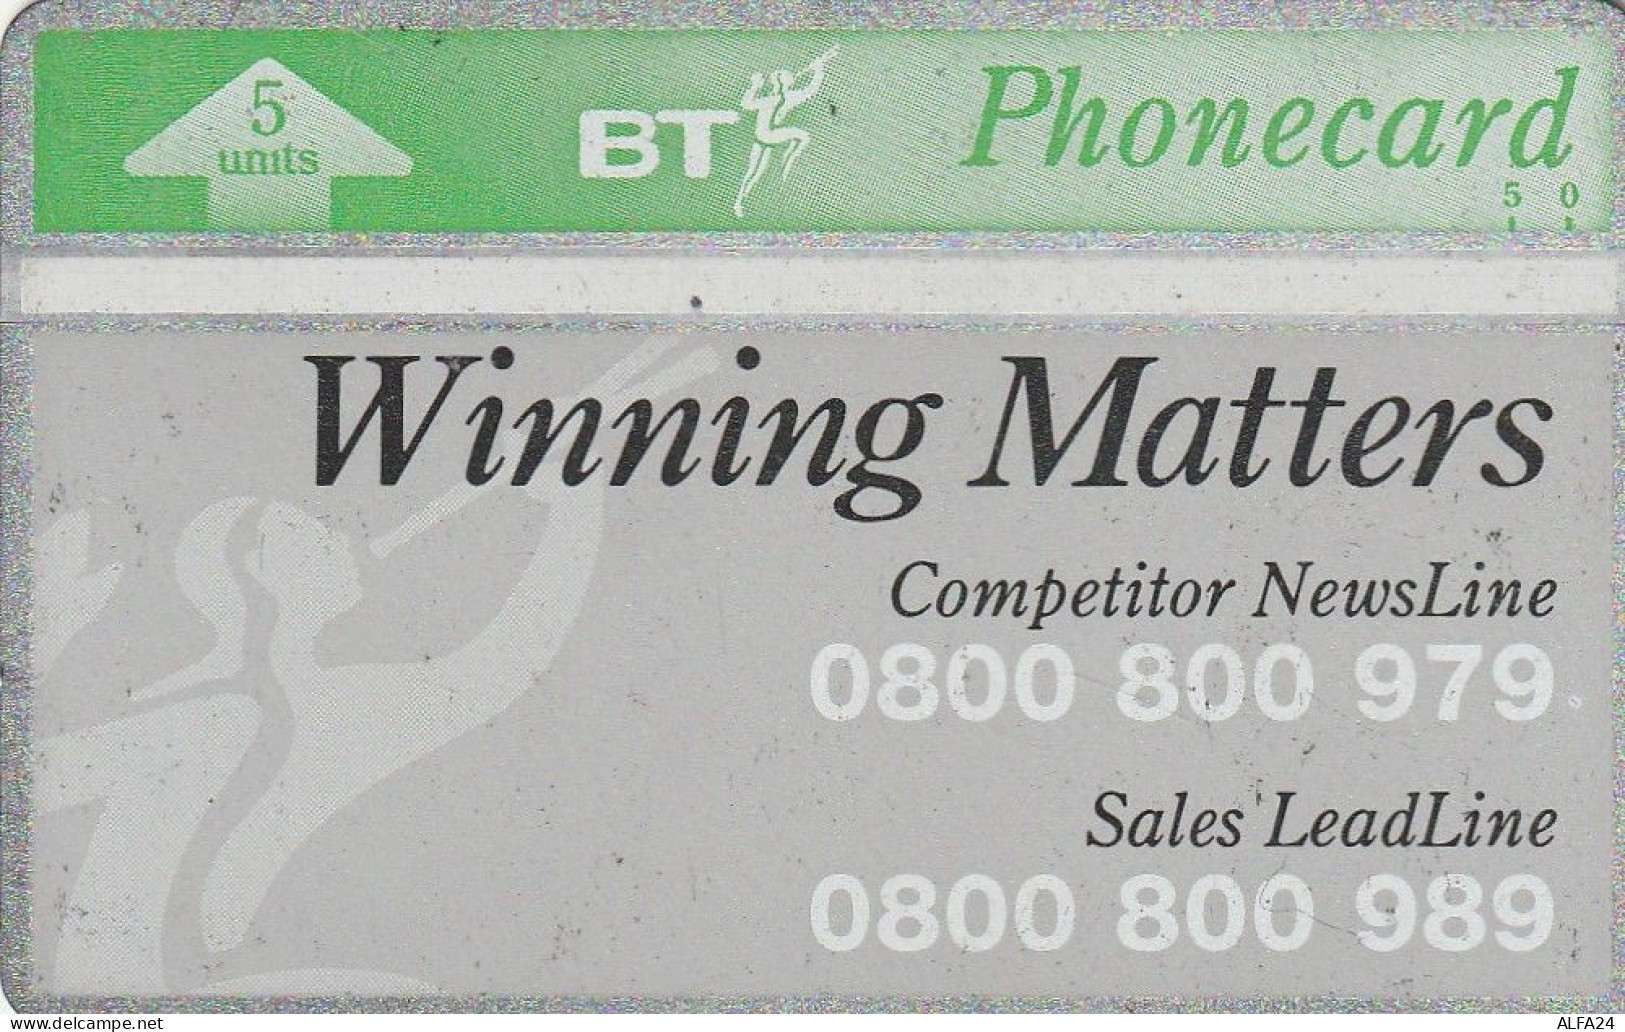 PHONE CARD UK LG (E76.12.6 - BT Edición Privada